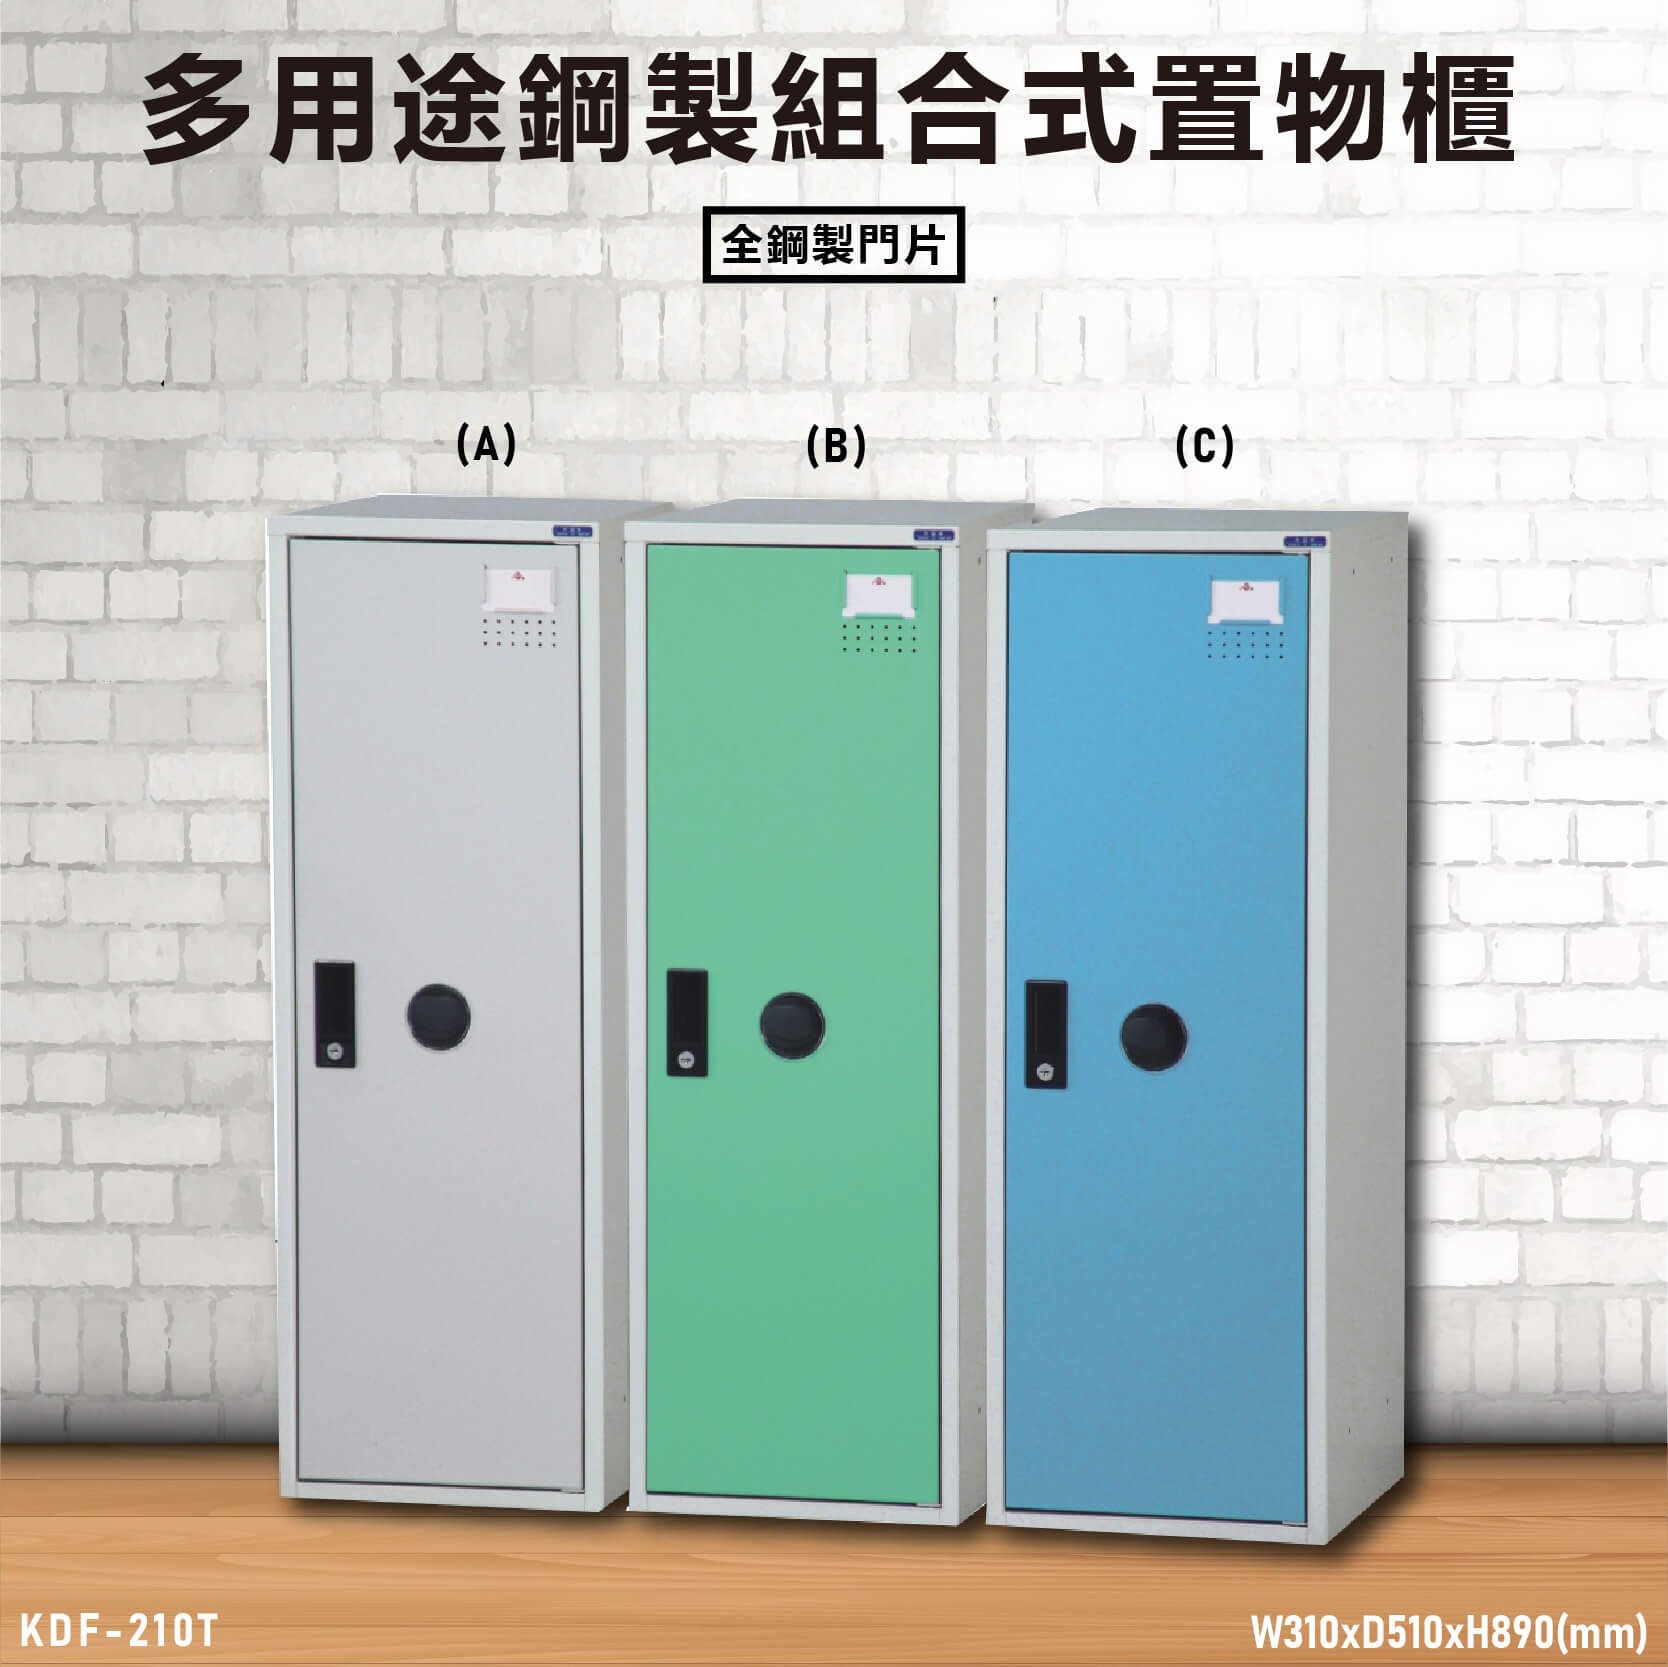 『TW品質保證』KDF-210T【大富】多用途鋼製組合式置物櫃 衣櫃 鞋櫃 置物櫃 零件存放分類 任意組合櫃子